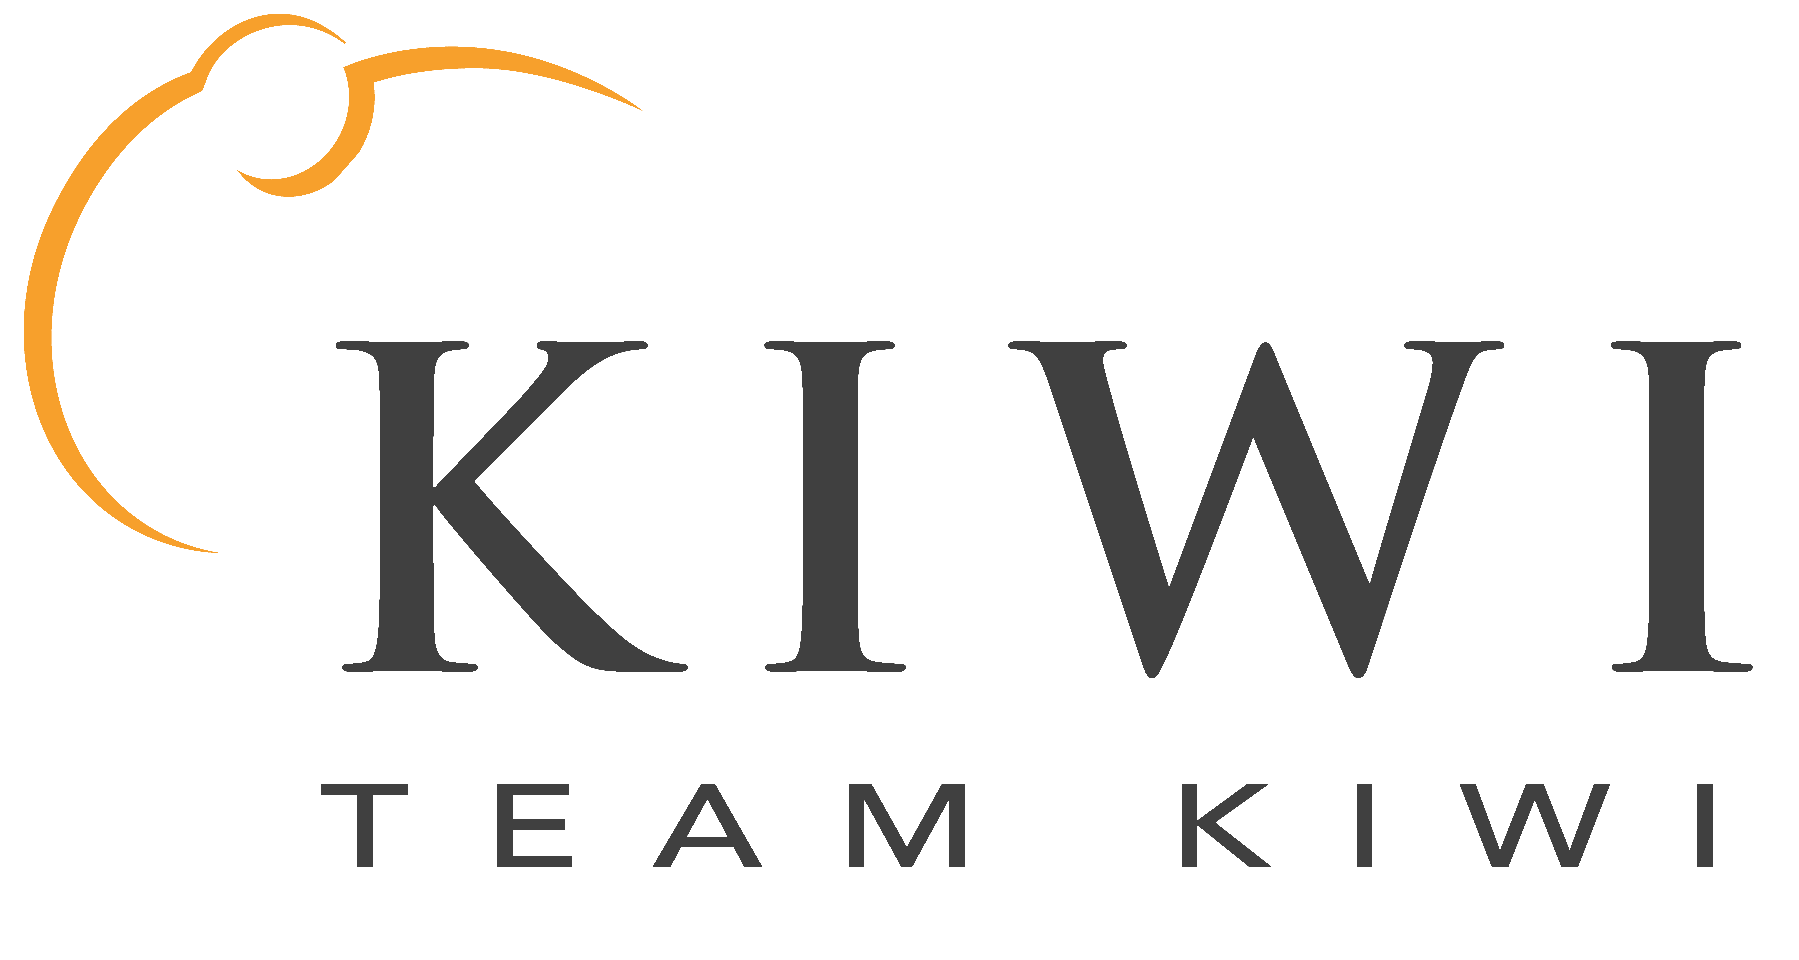 Team Kiwi